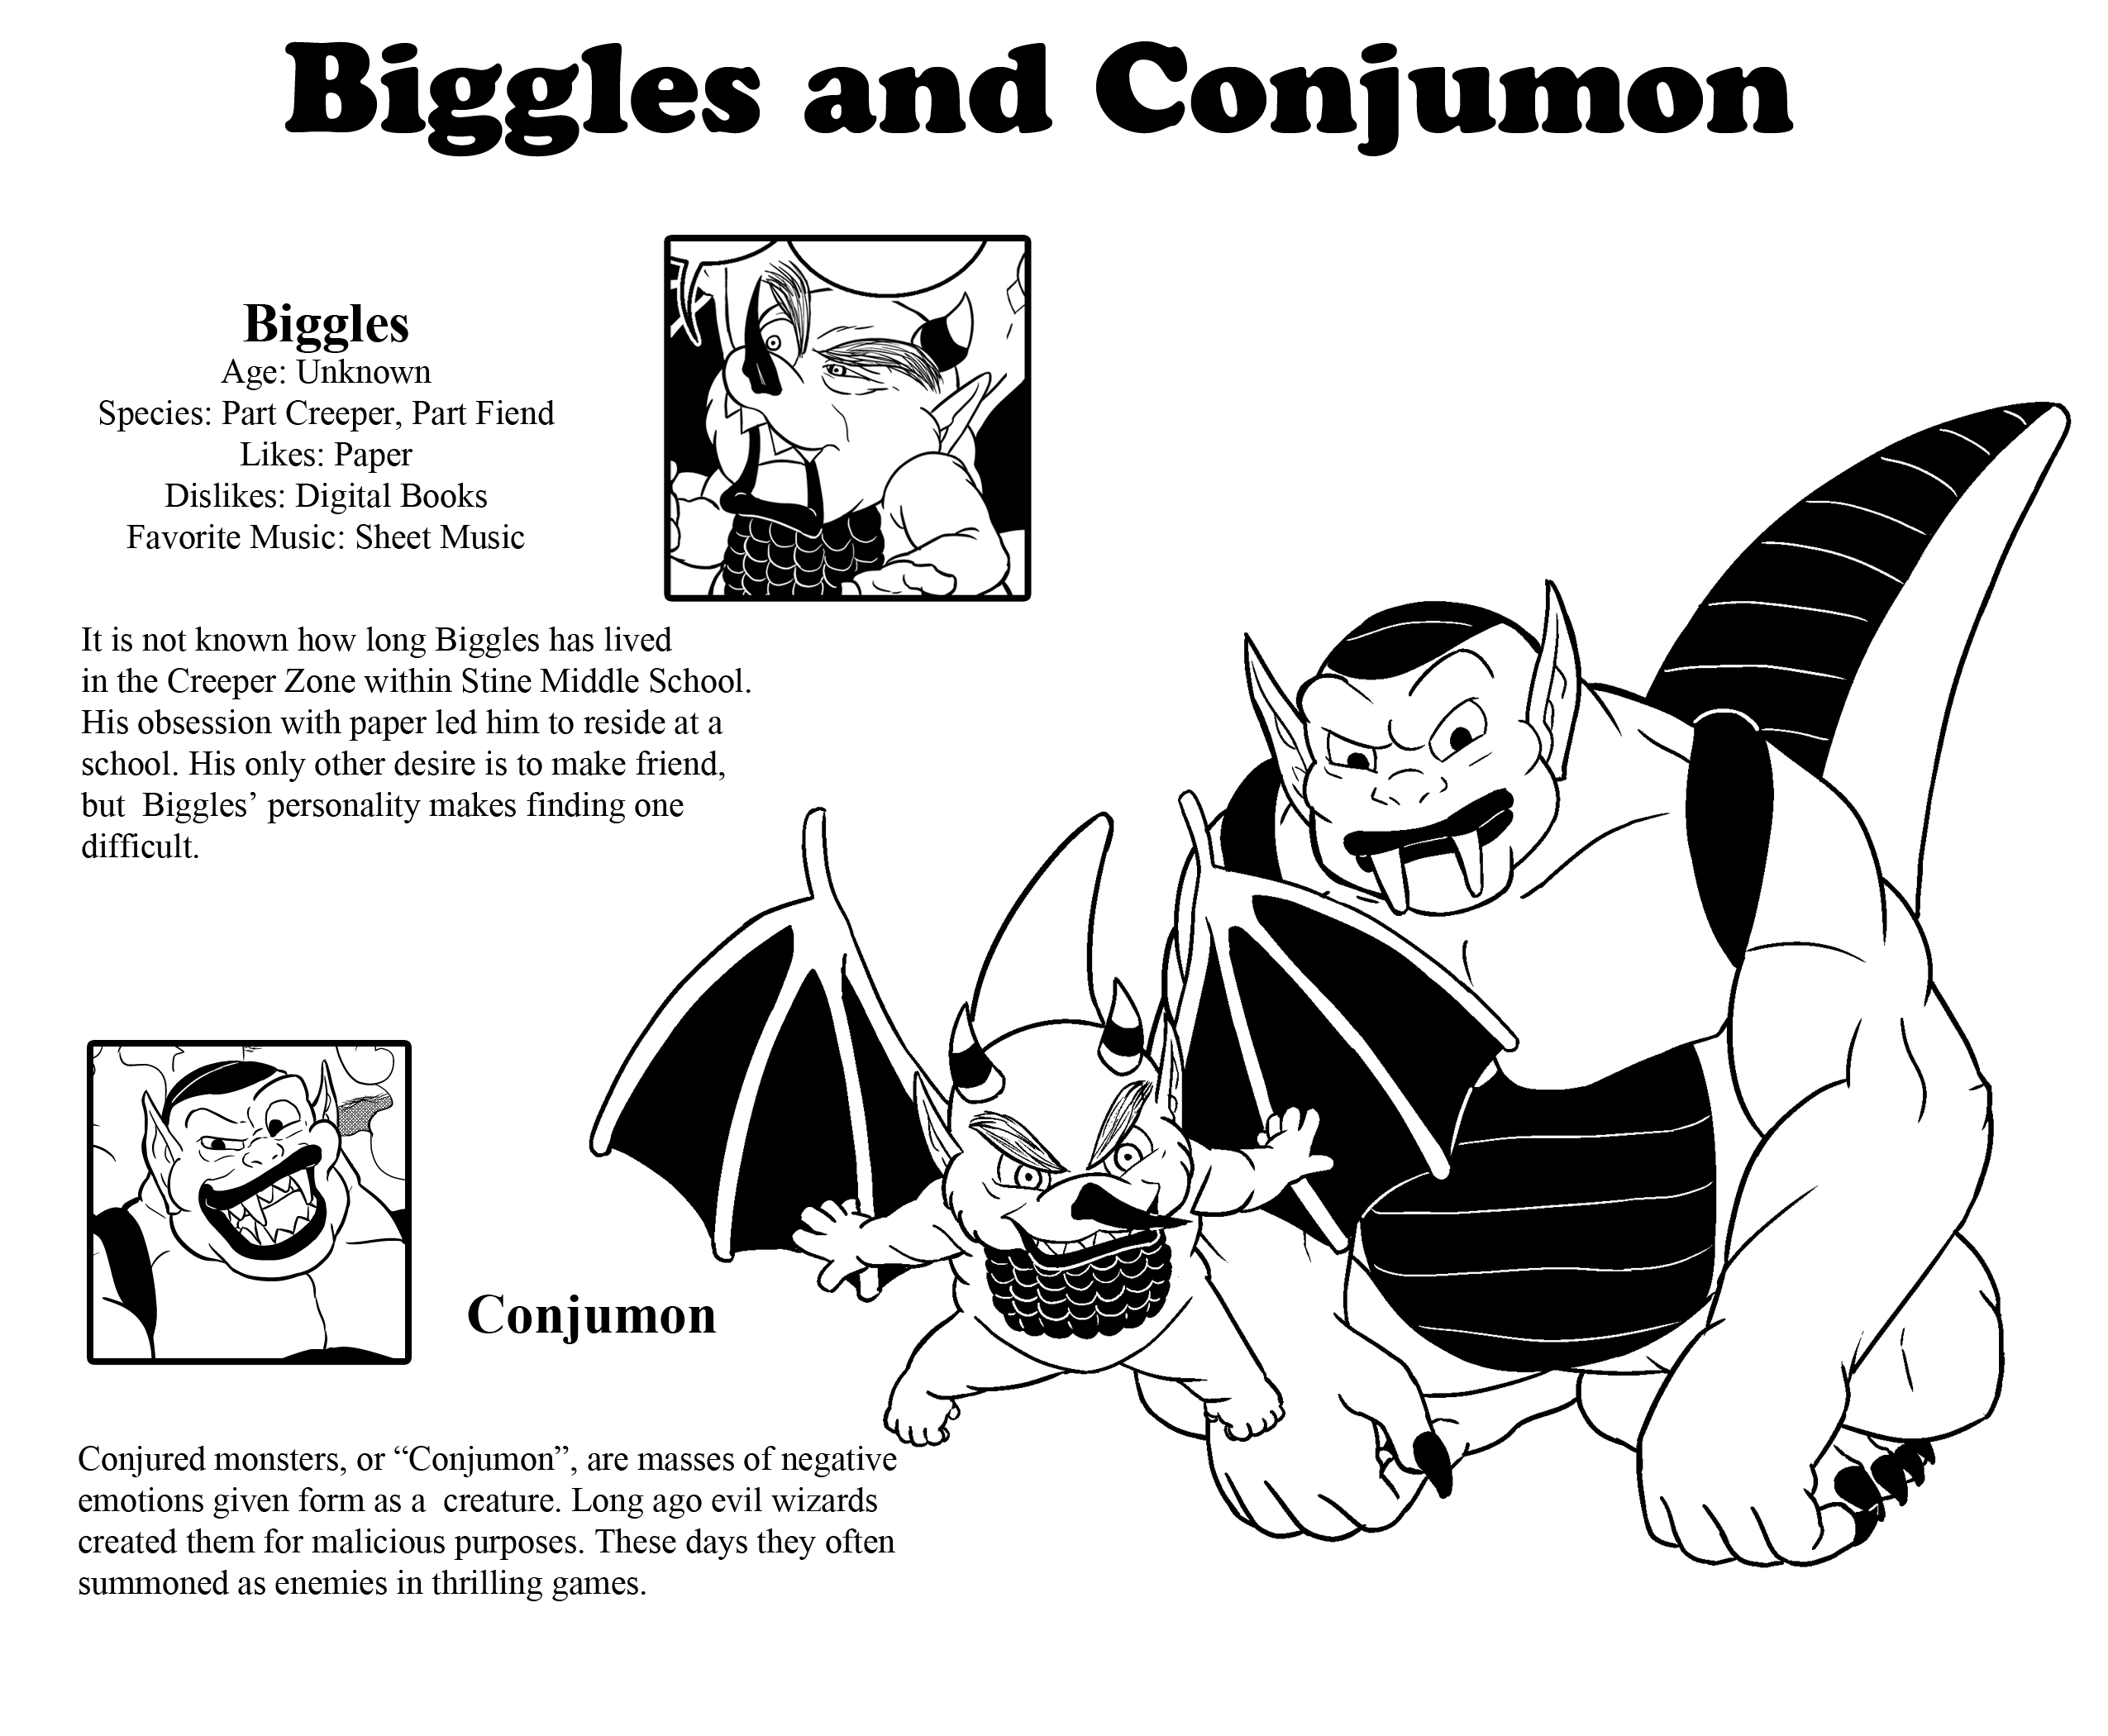 Biggles and Conjumon